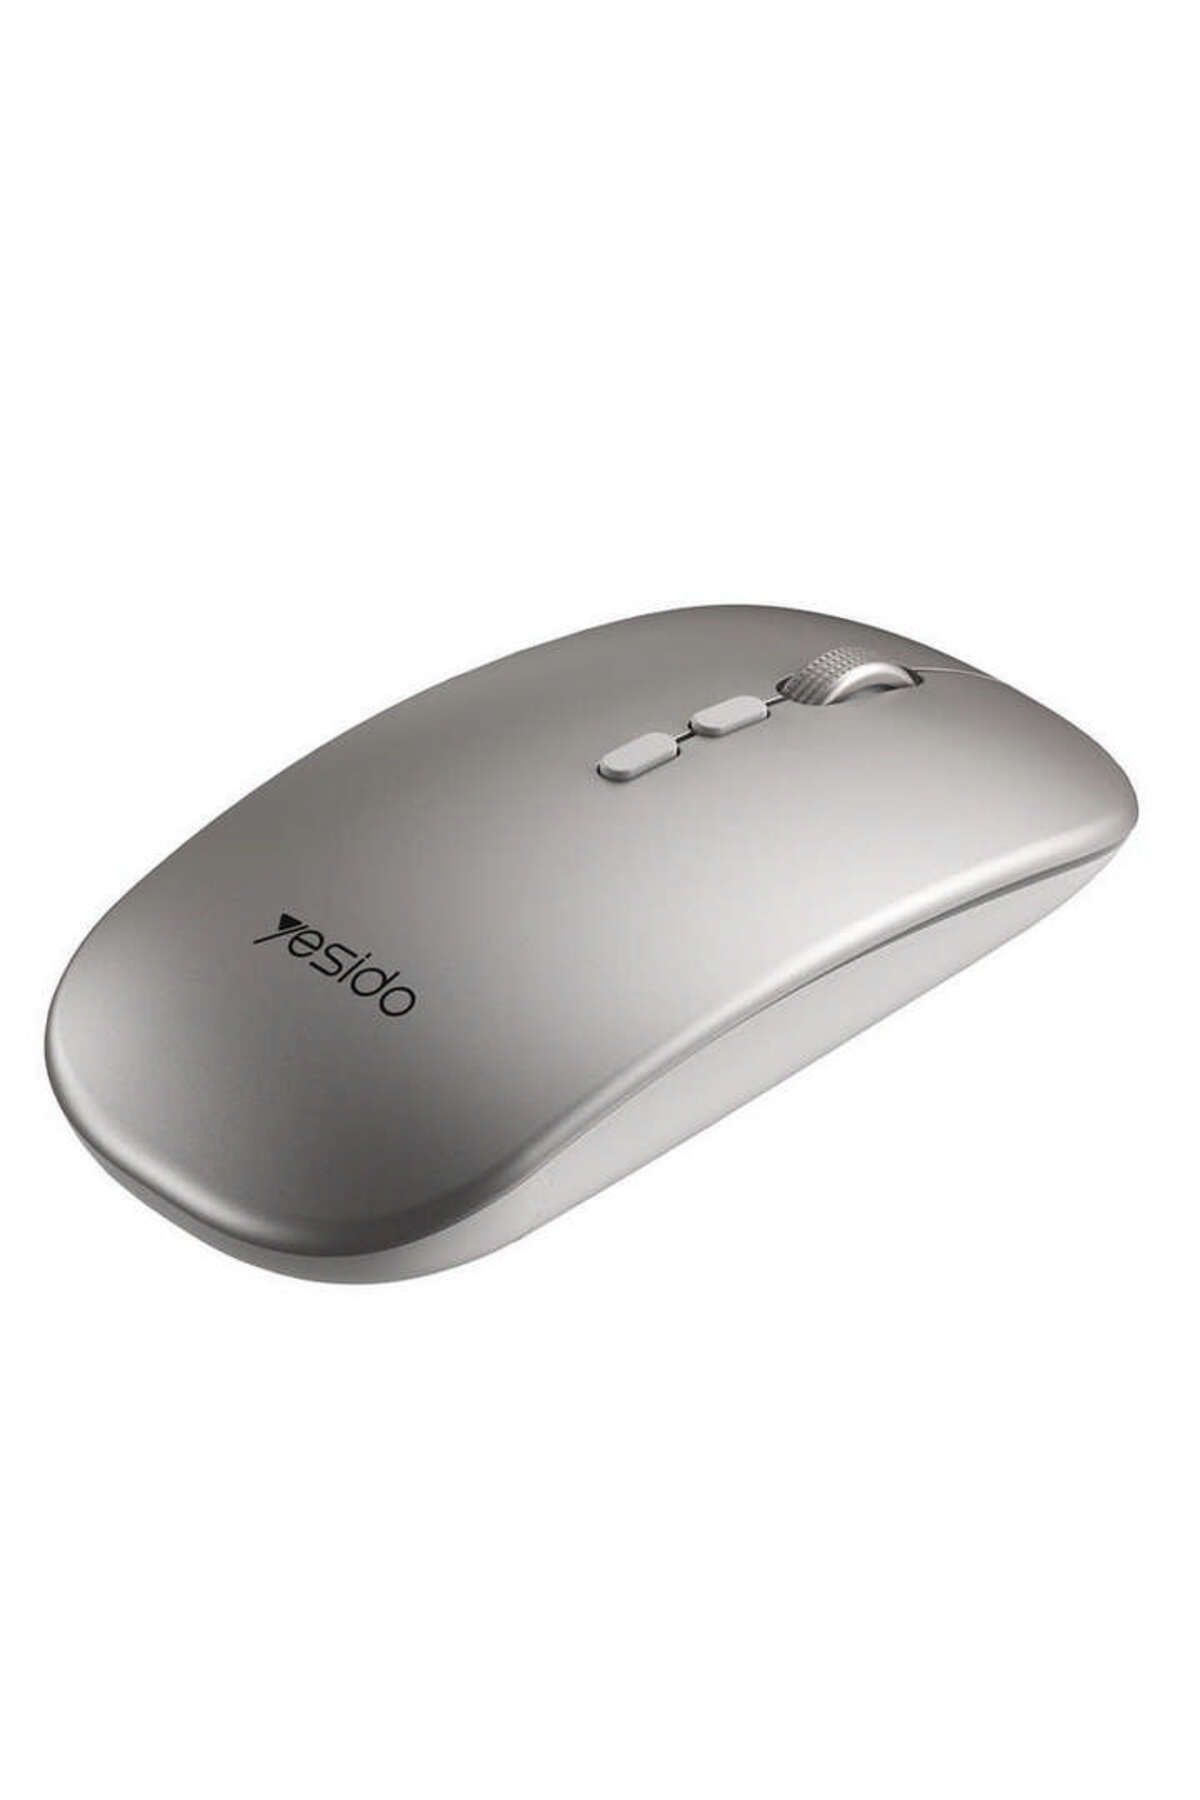 NewFace Yesido KB15 2.4G Ergonomik Kablosuz Mouse - Siyah 144036